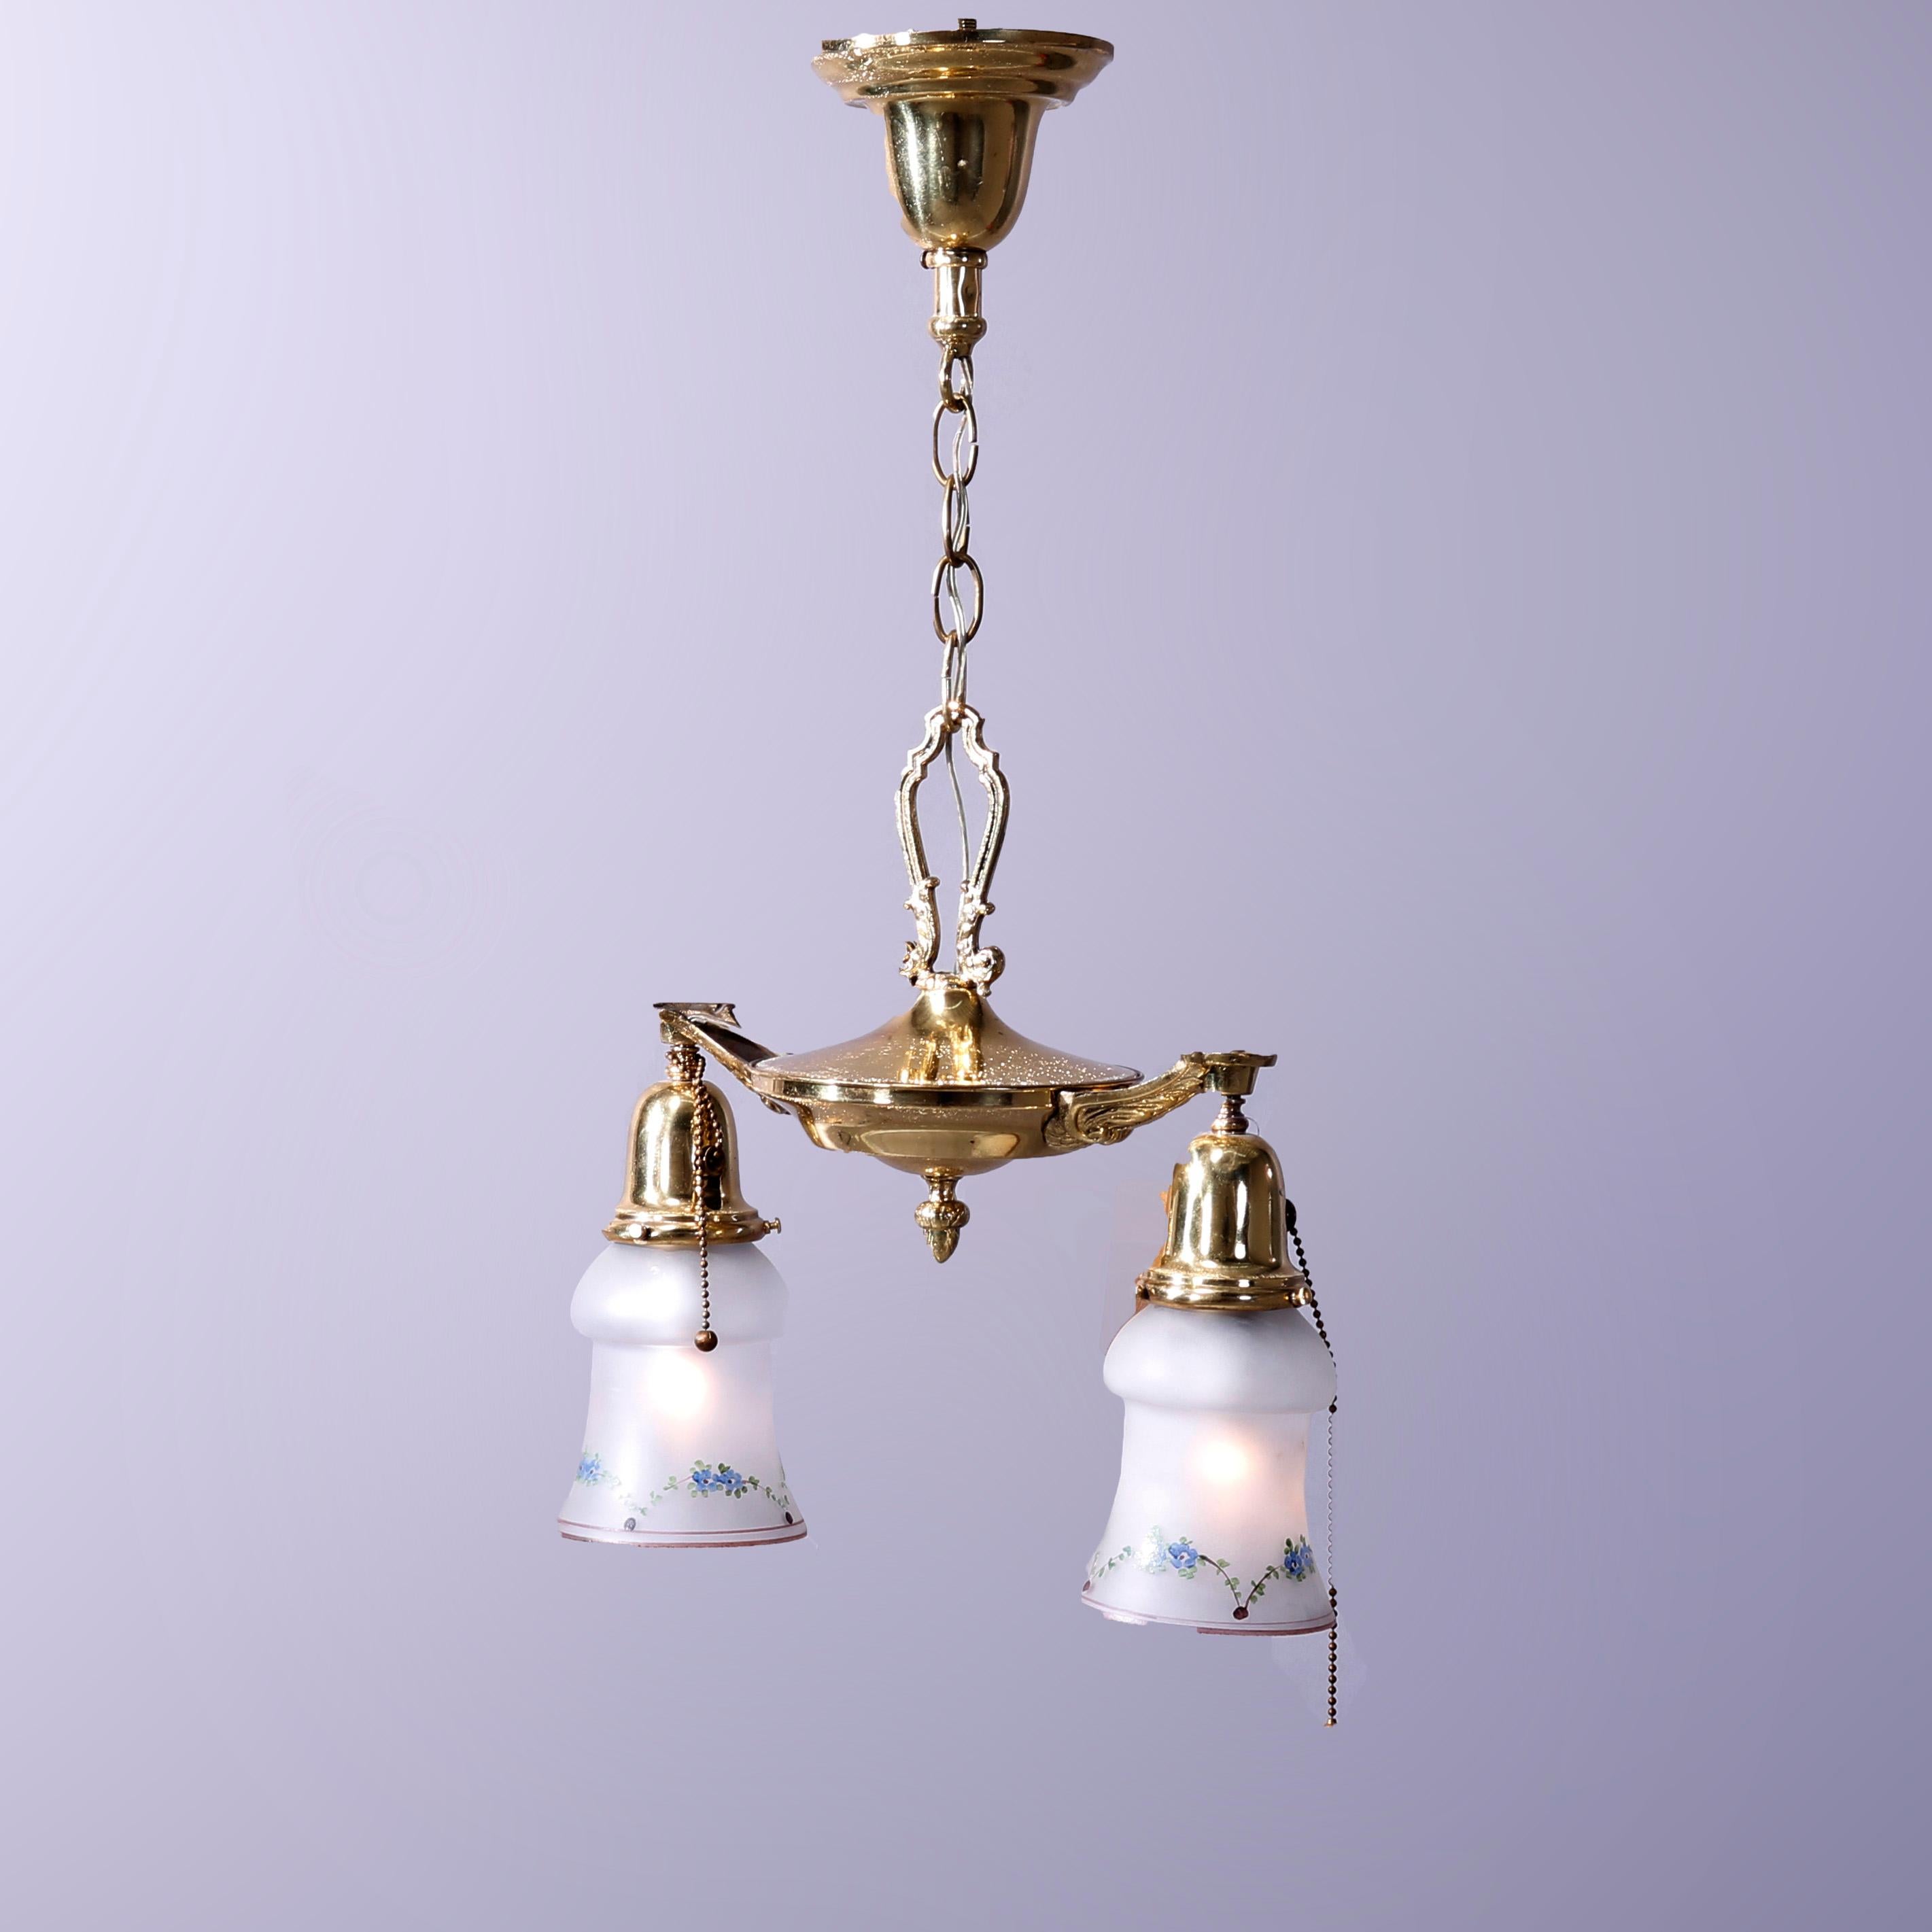 antique 1920 brass ceiling light fixtures